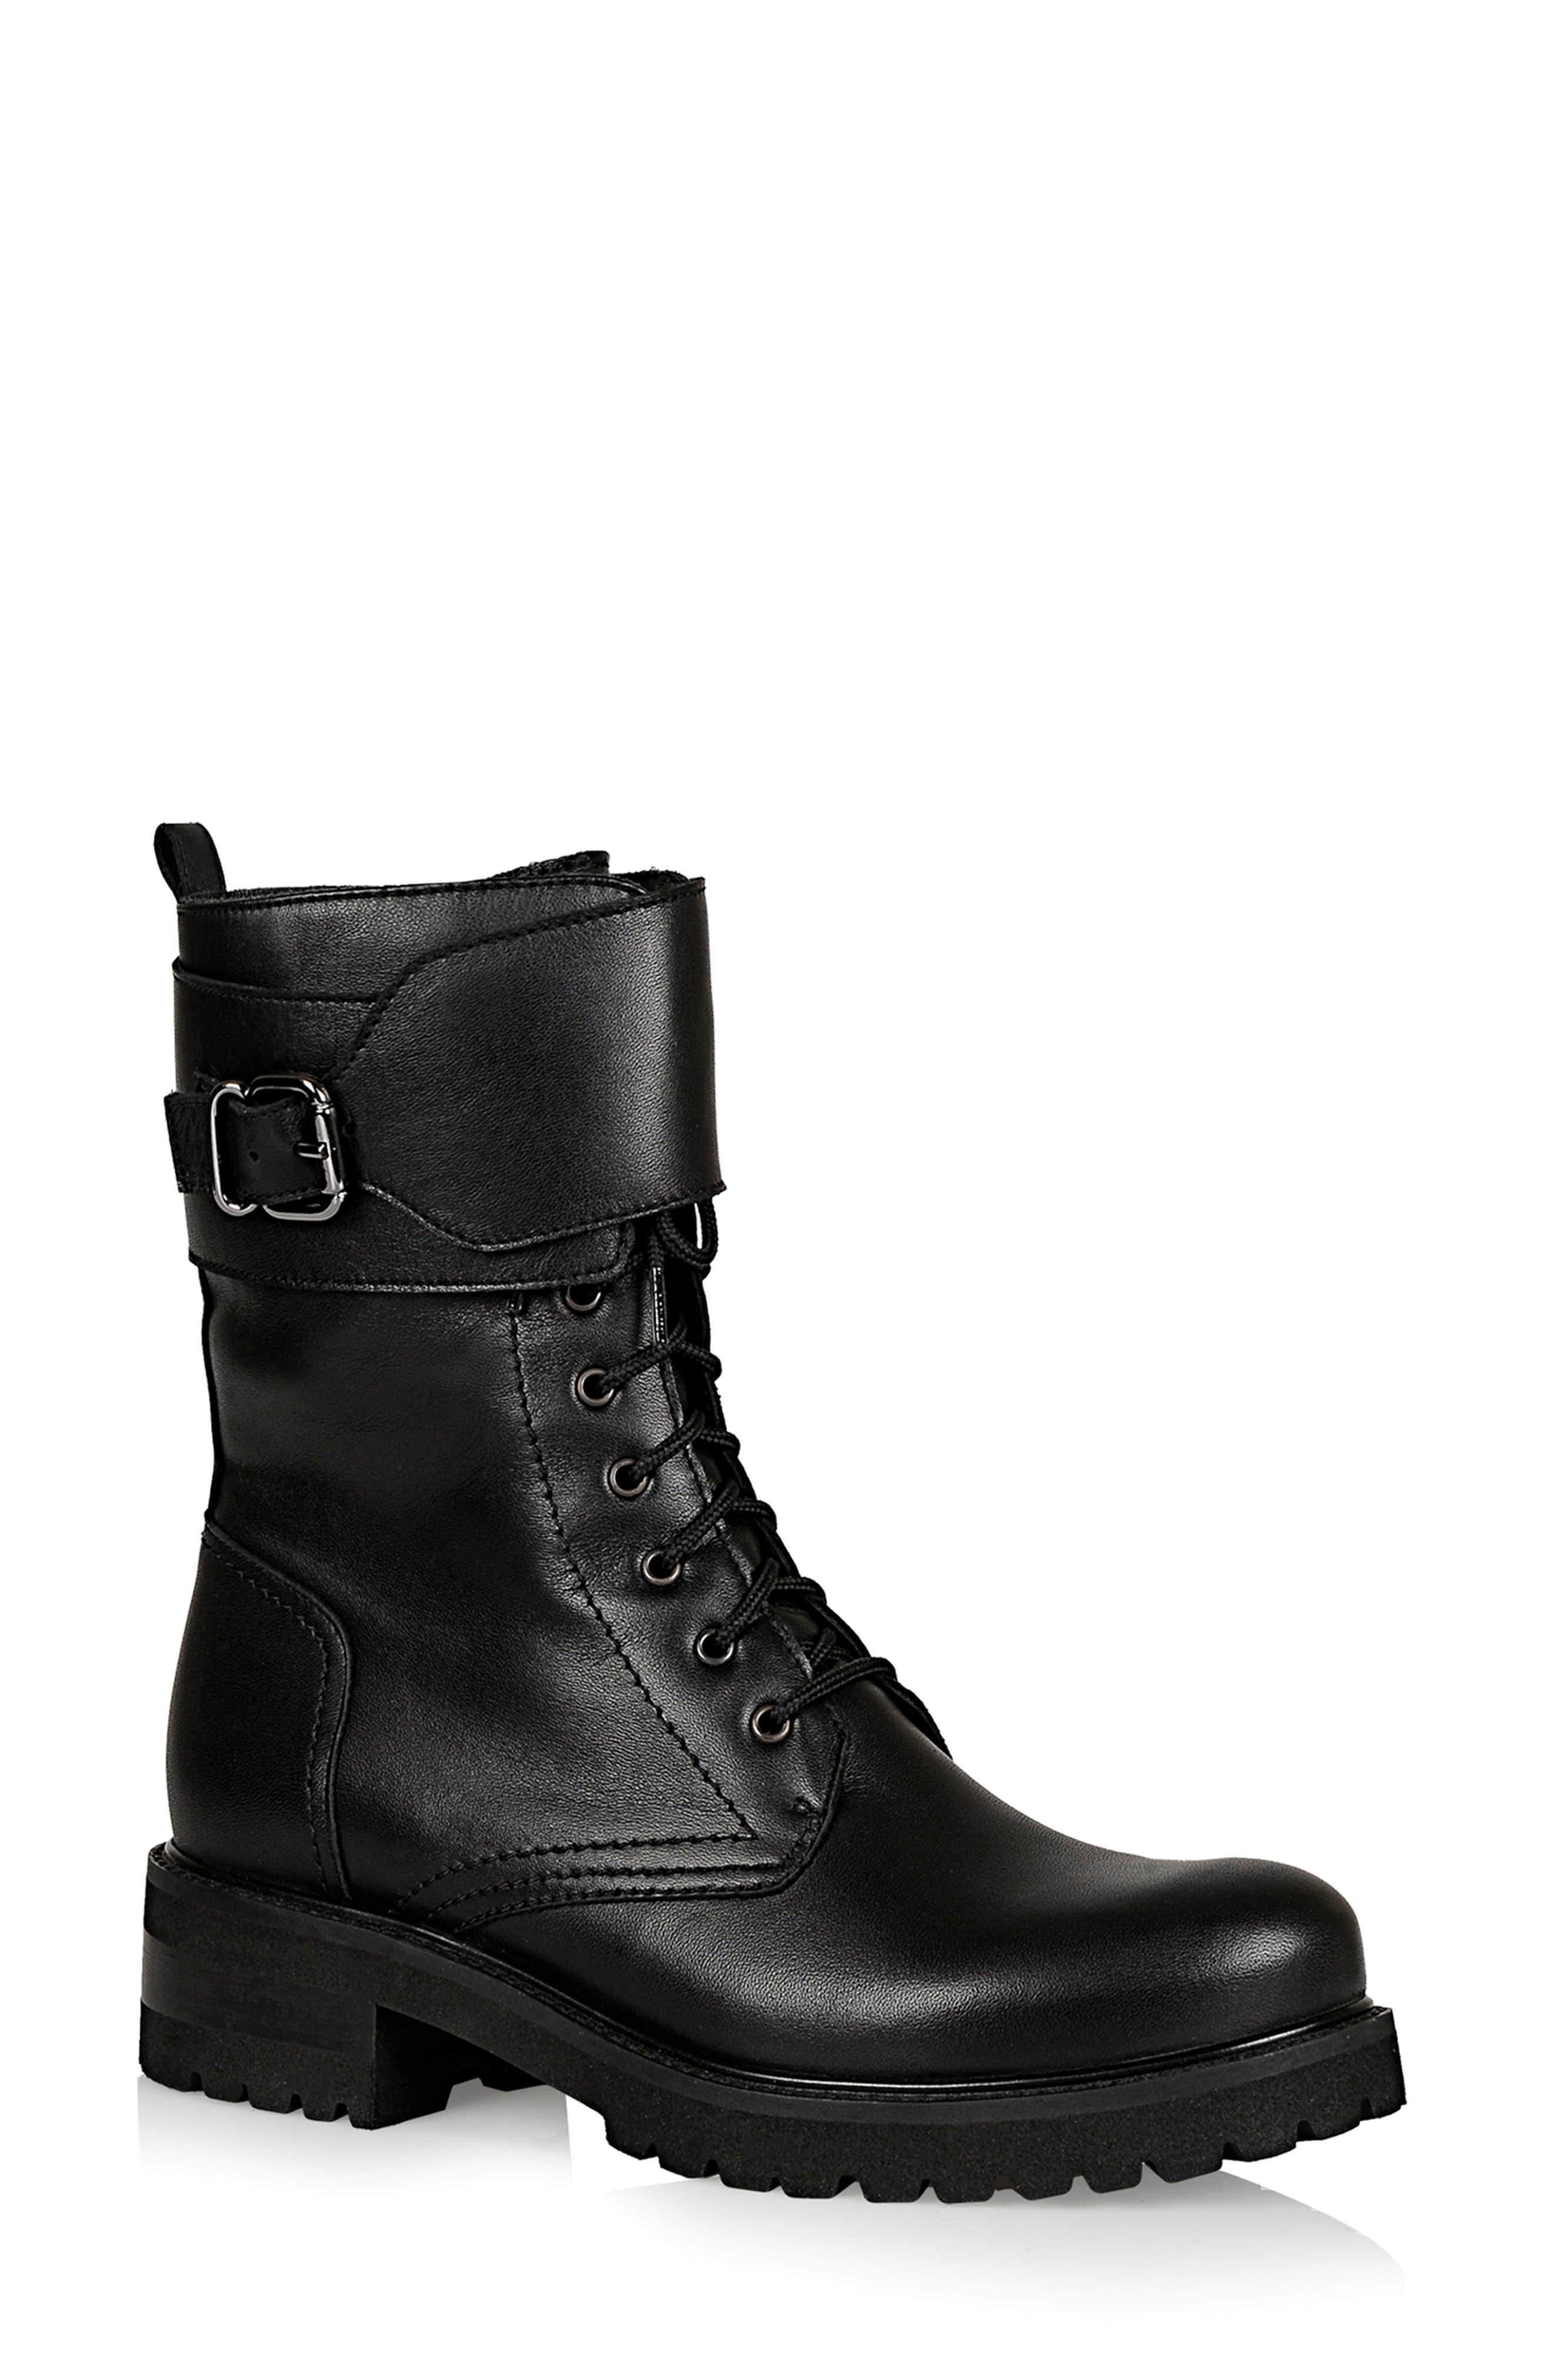 La Canadienne Camden Waterproof Boot in Black Leather (Black) - Lyst